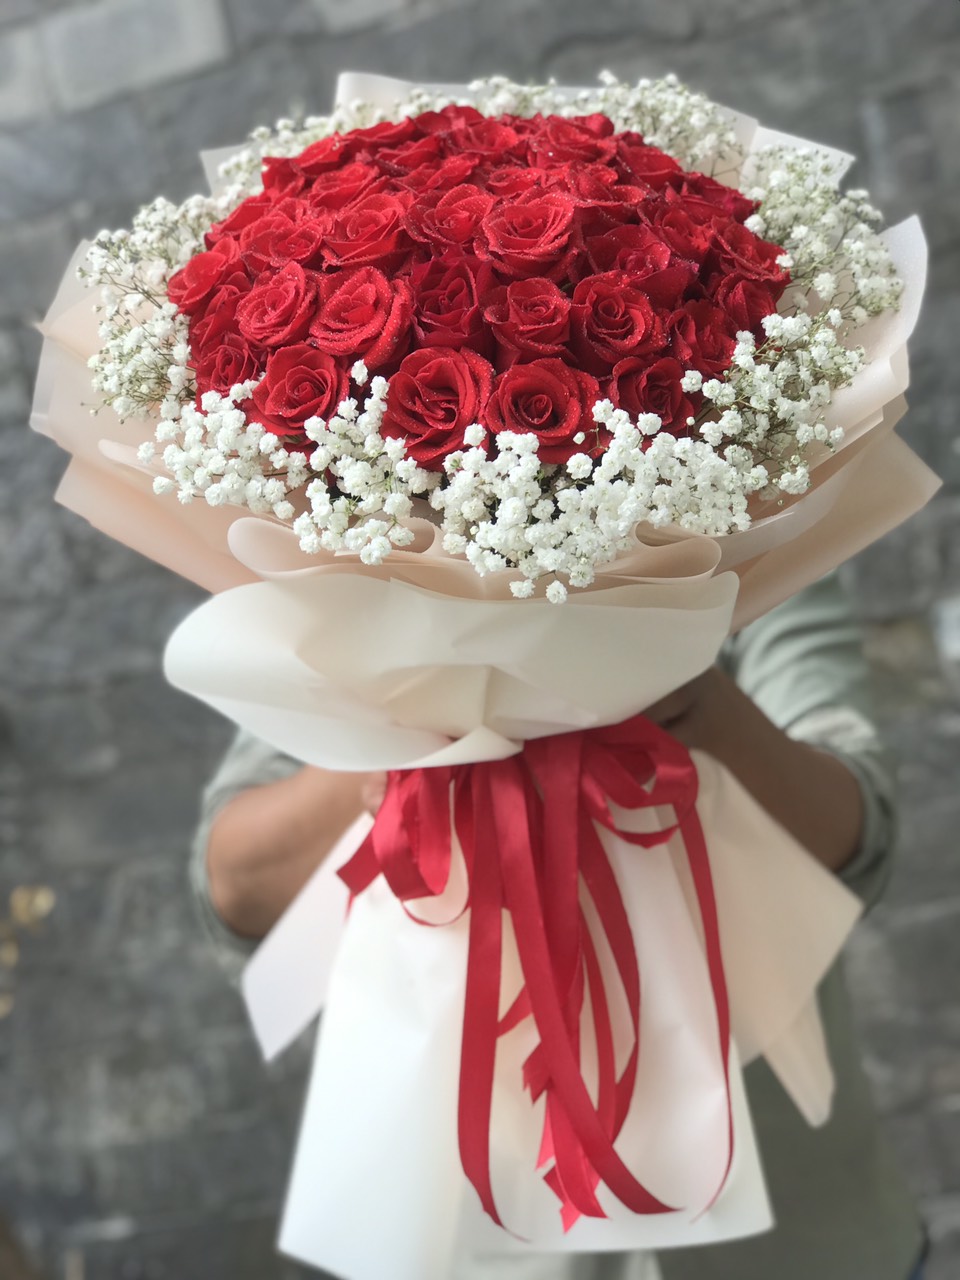 Bó hoa hồng nhung thể hiện tình yêu